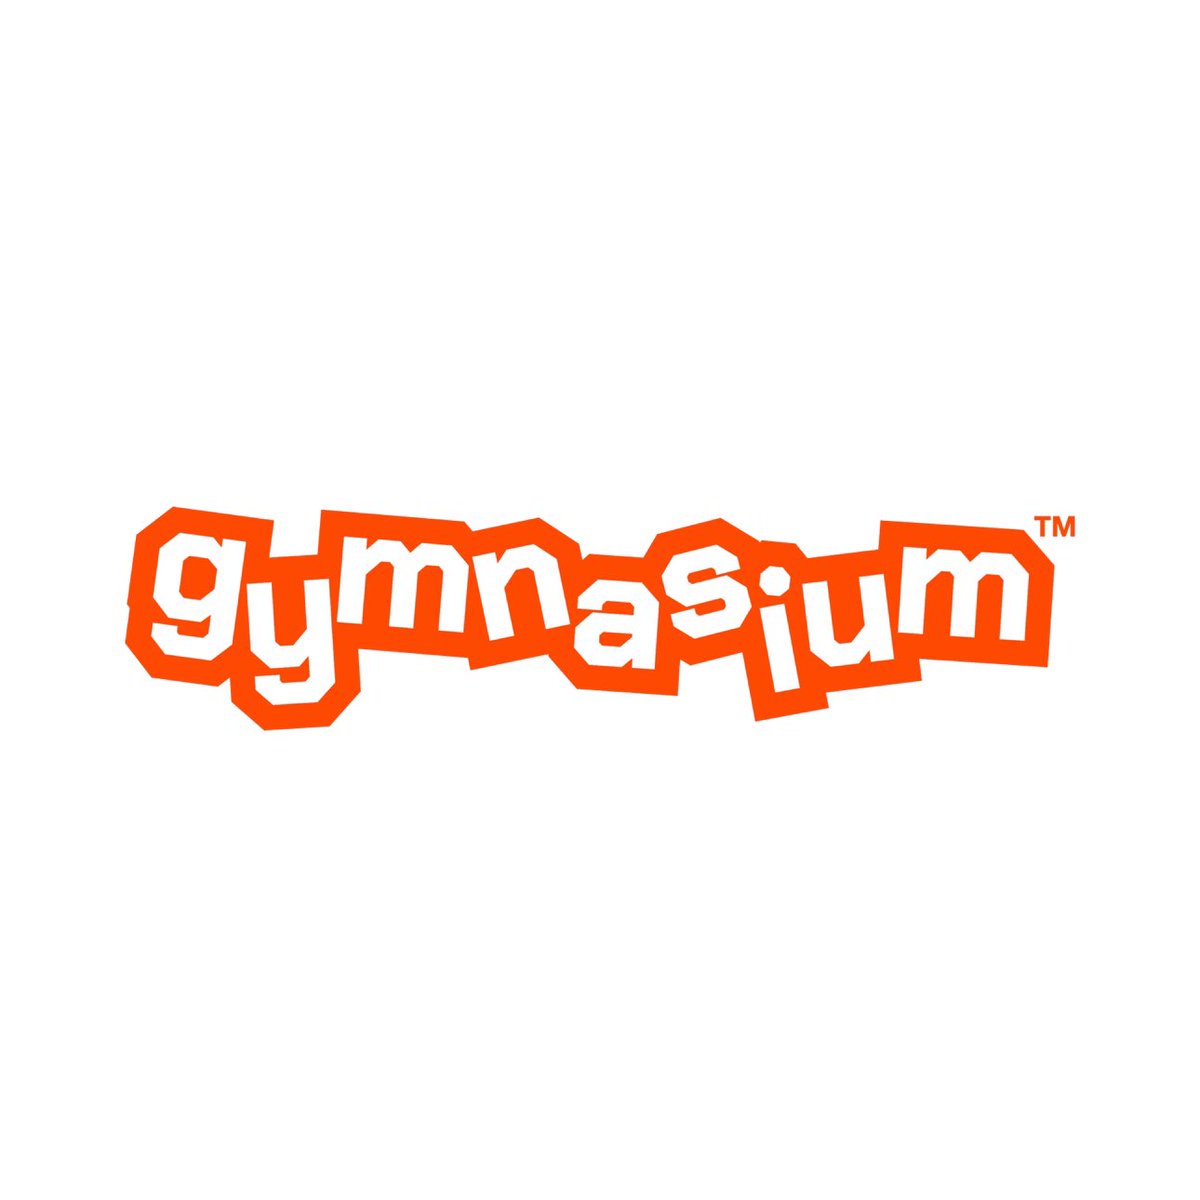 Adam Faze has announced the rebranding of his production company, FazeWorld, to ‘Gymnasium.’